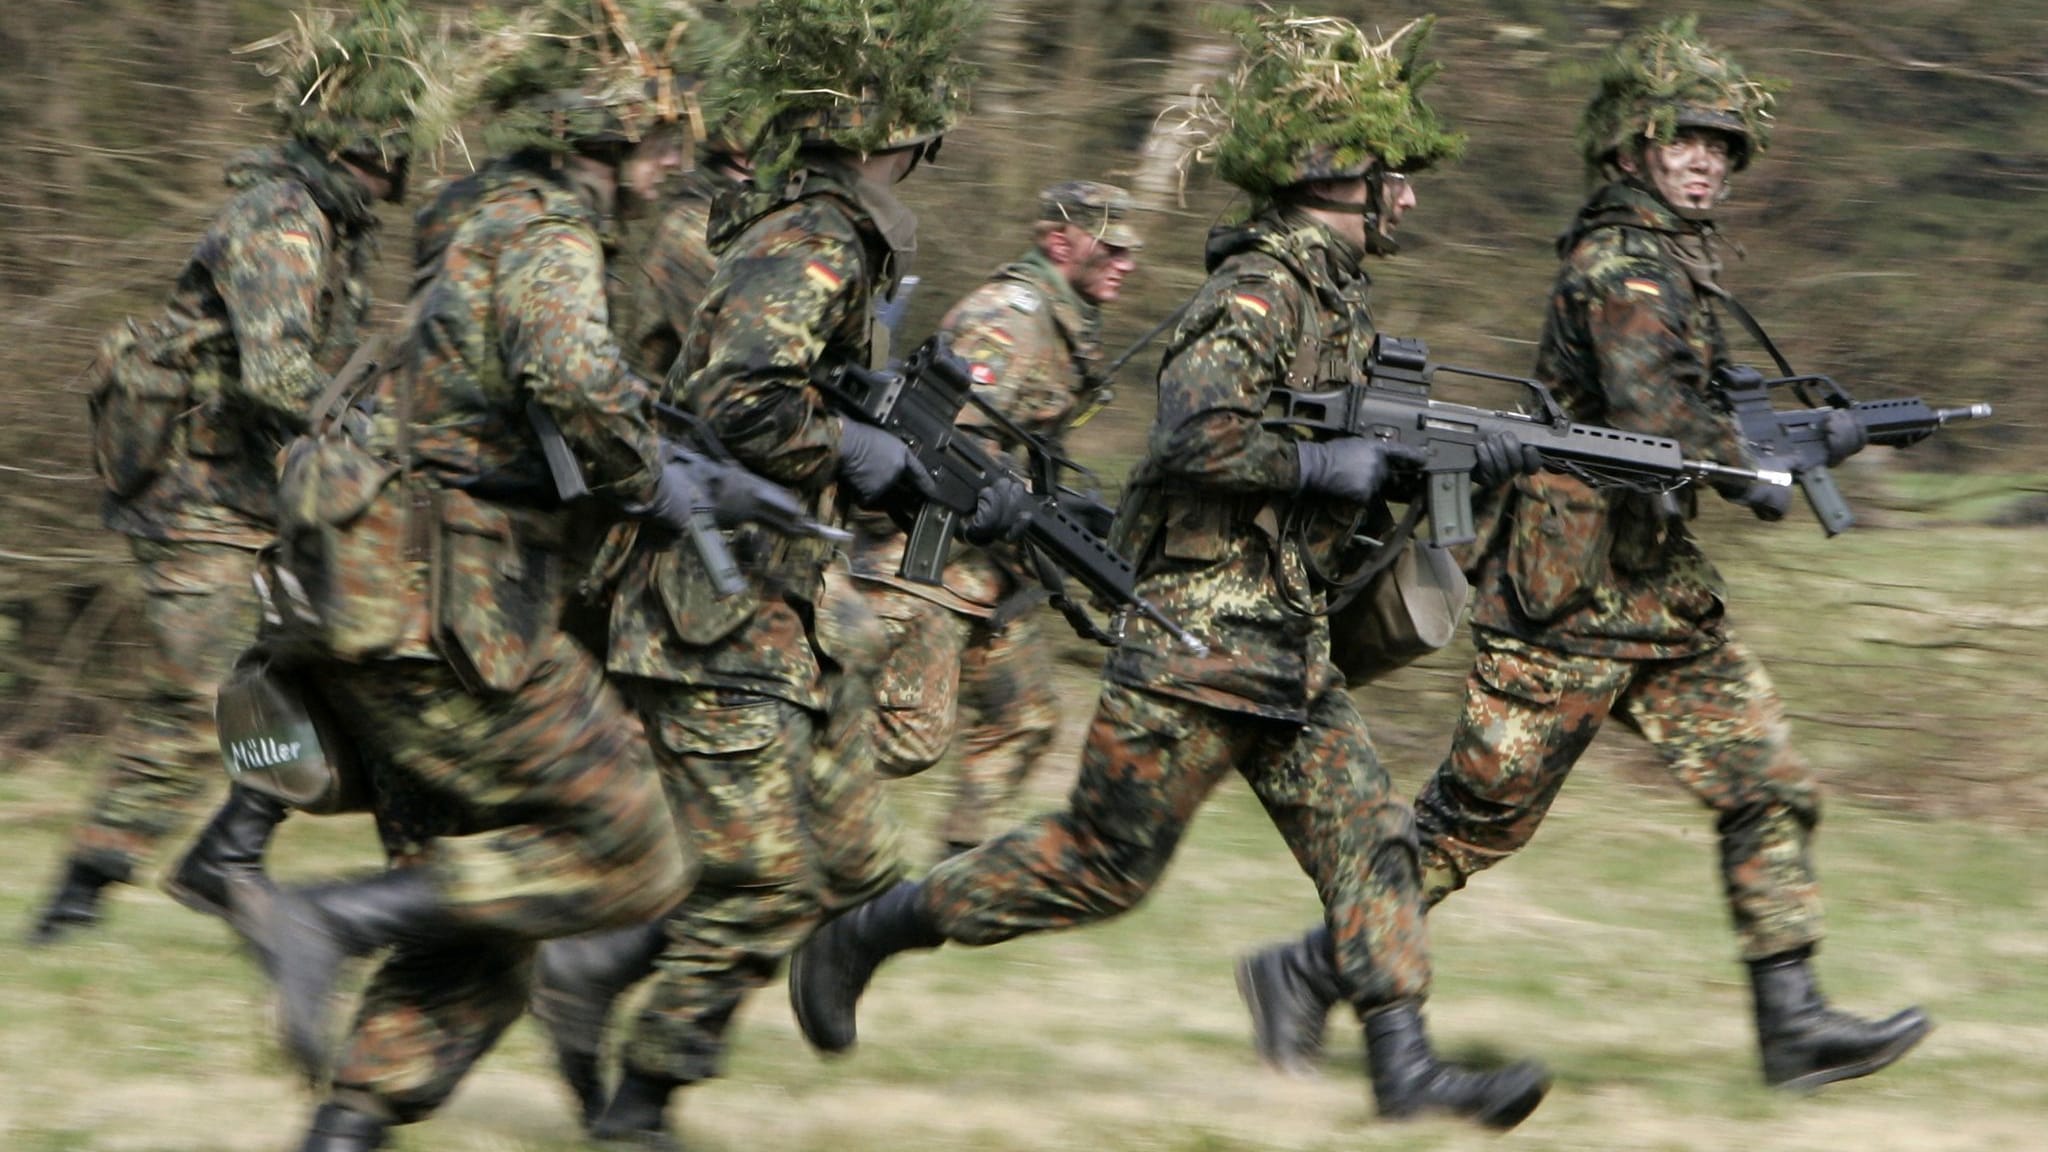 Wehrpflicht: Braucht die Bundeswehr das überhaupt? Pro und Kontra